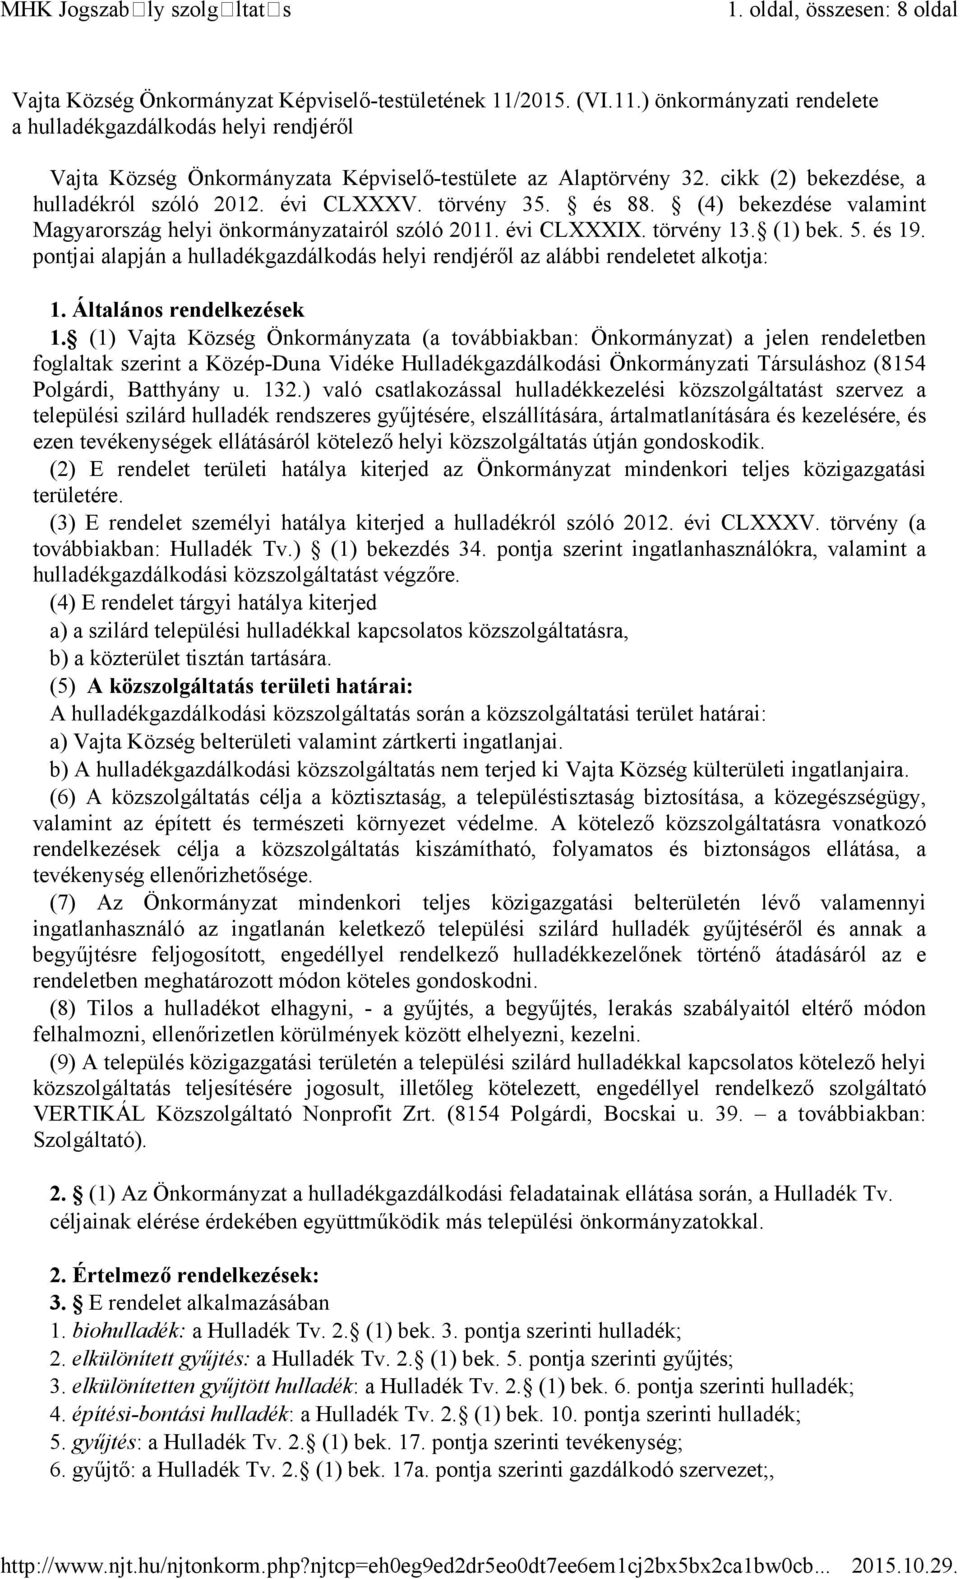 törvény 35. és 88. (4) bekezdése valamint Magyarország helyi önkormányzatairól szóló 2011. évi CLXXXIX. törvény 13. (1) bek. 5. és 19.